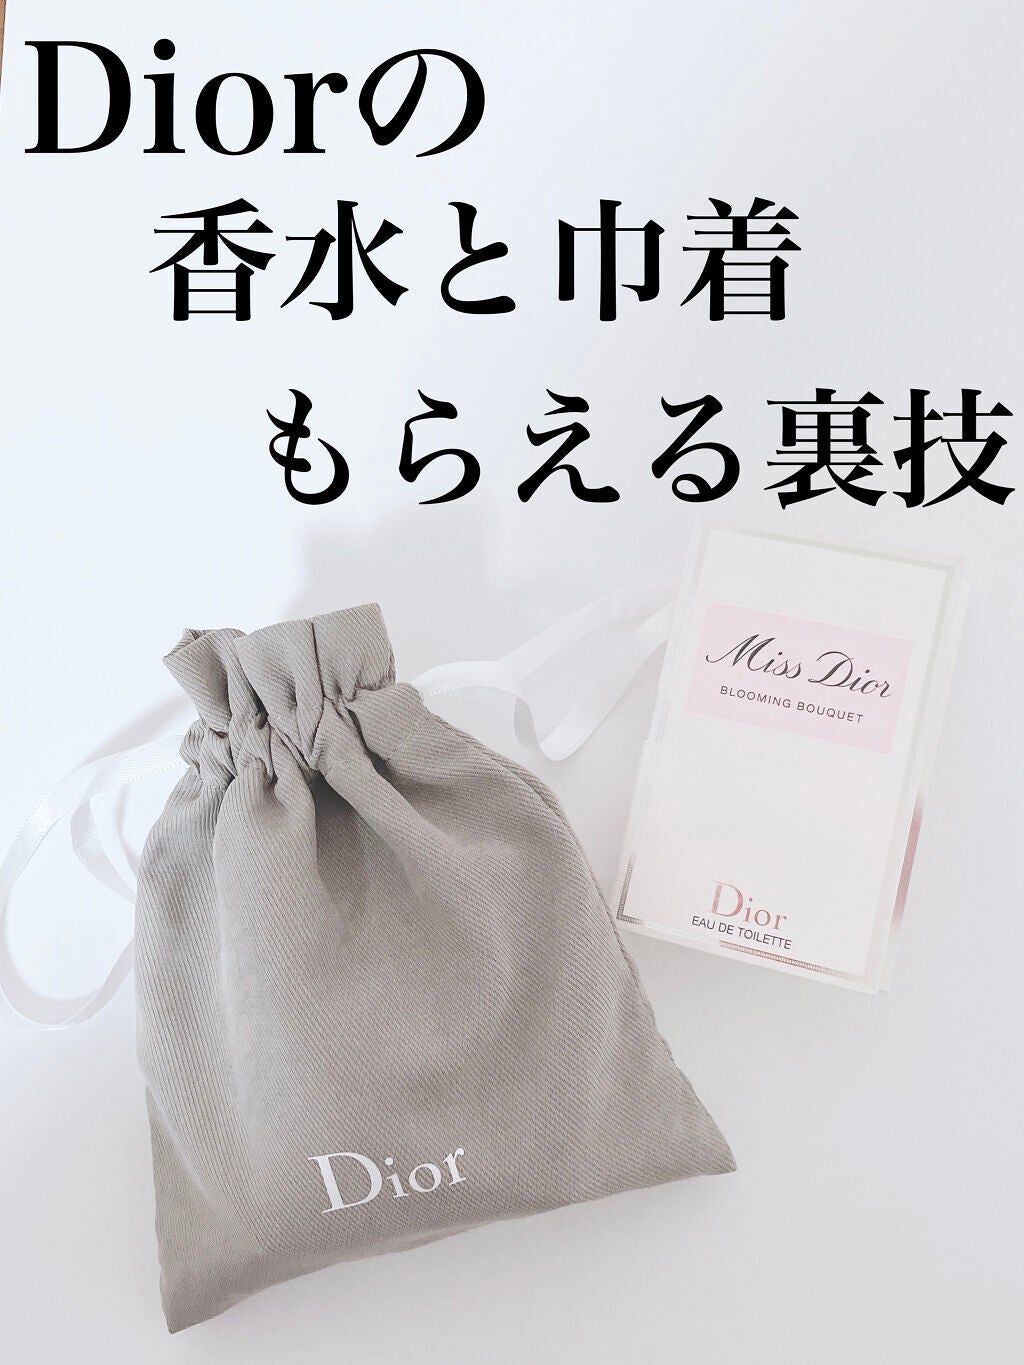 Dior ノベルティ 巾着袋 サンプルセット - トライアルセット